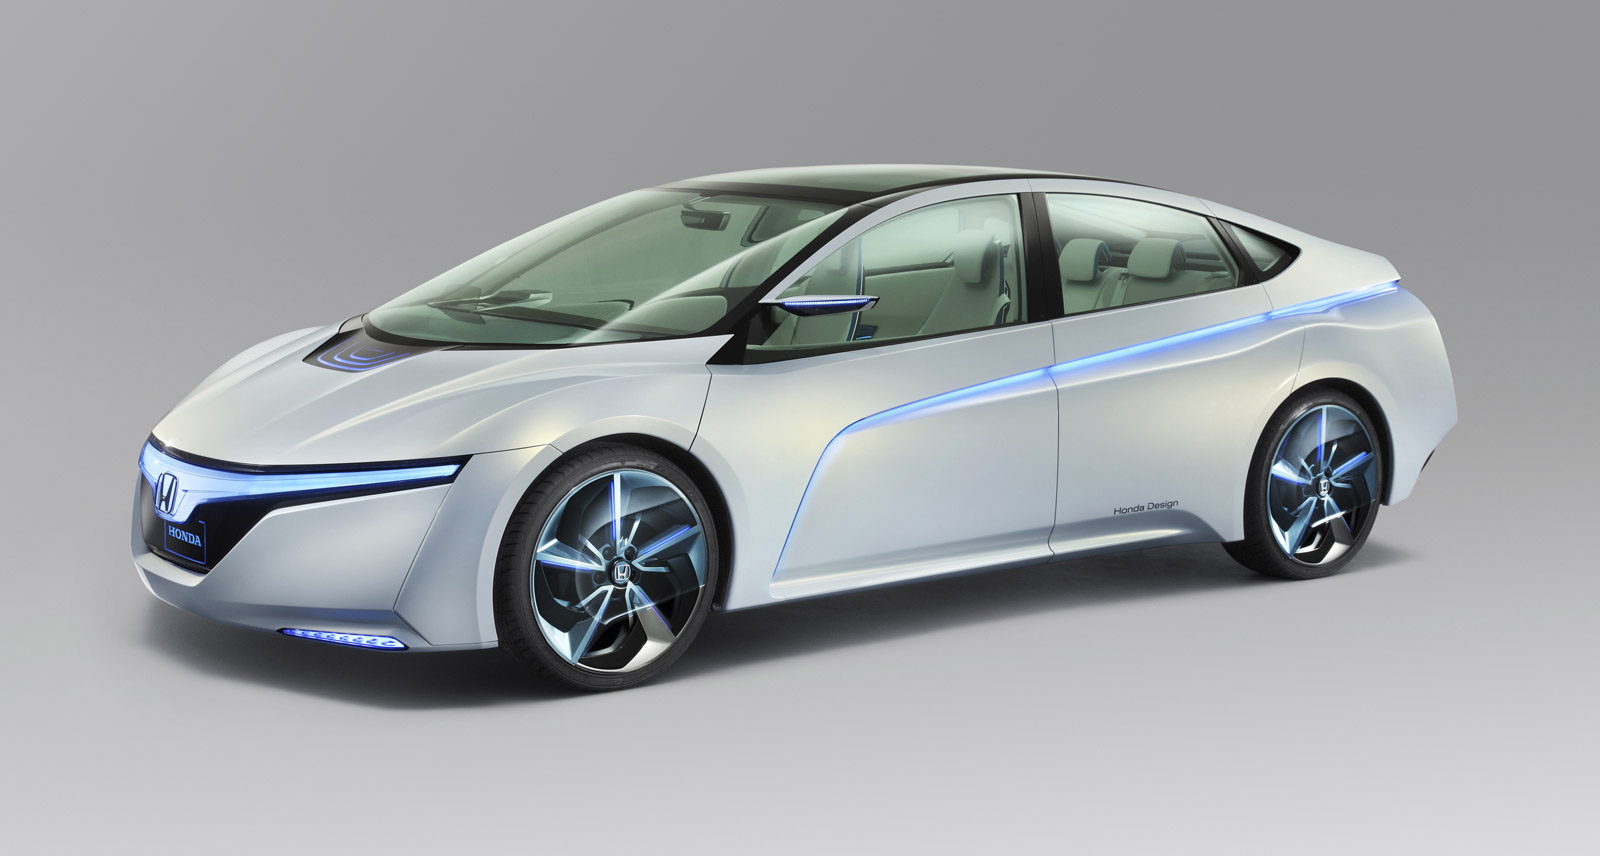 2011 Tokyo Motor Show Honda Reveals Electric Car Concepts